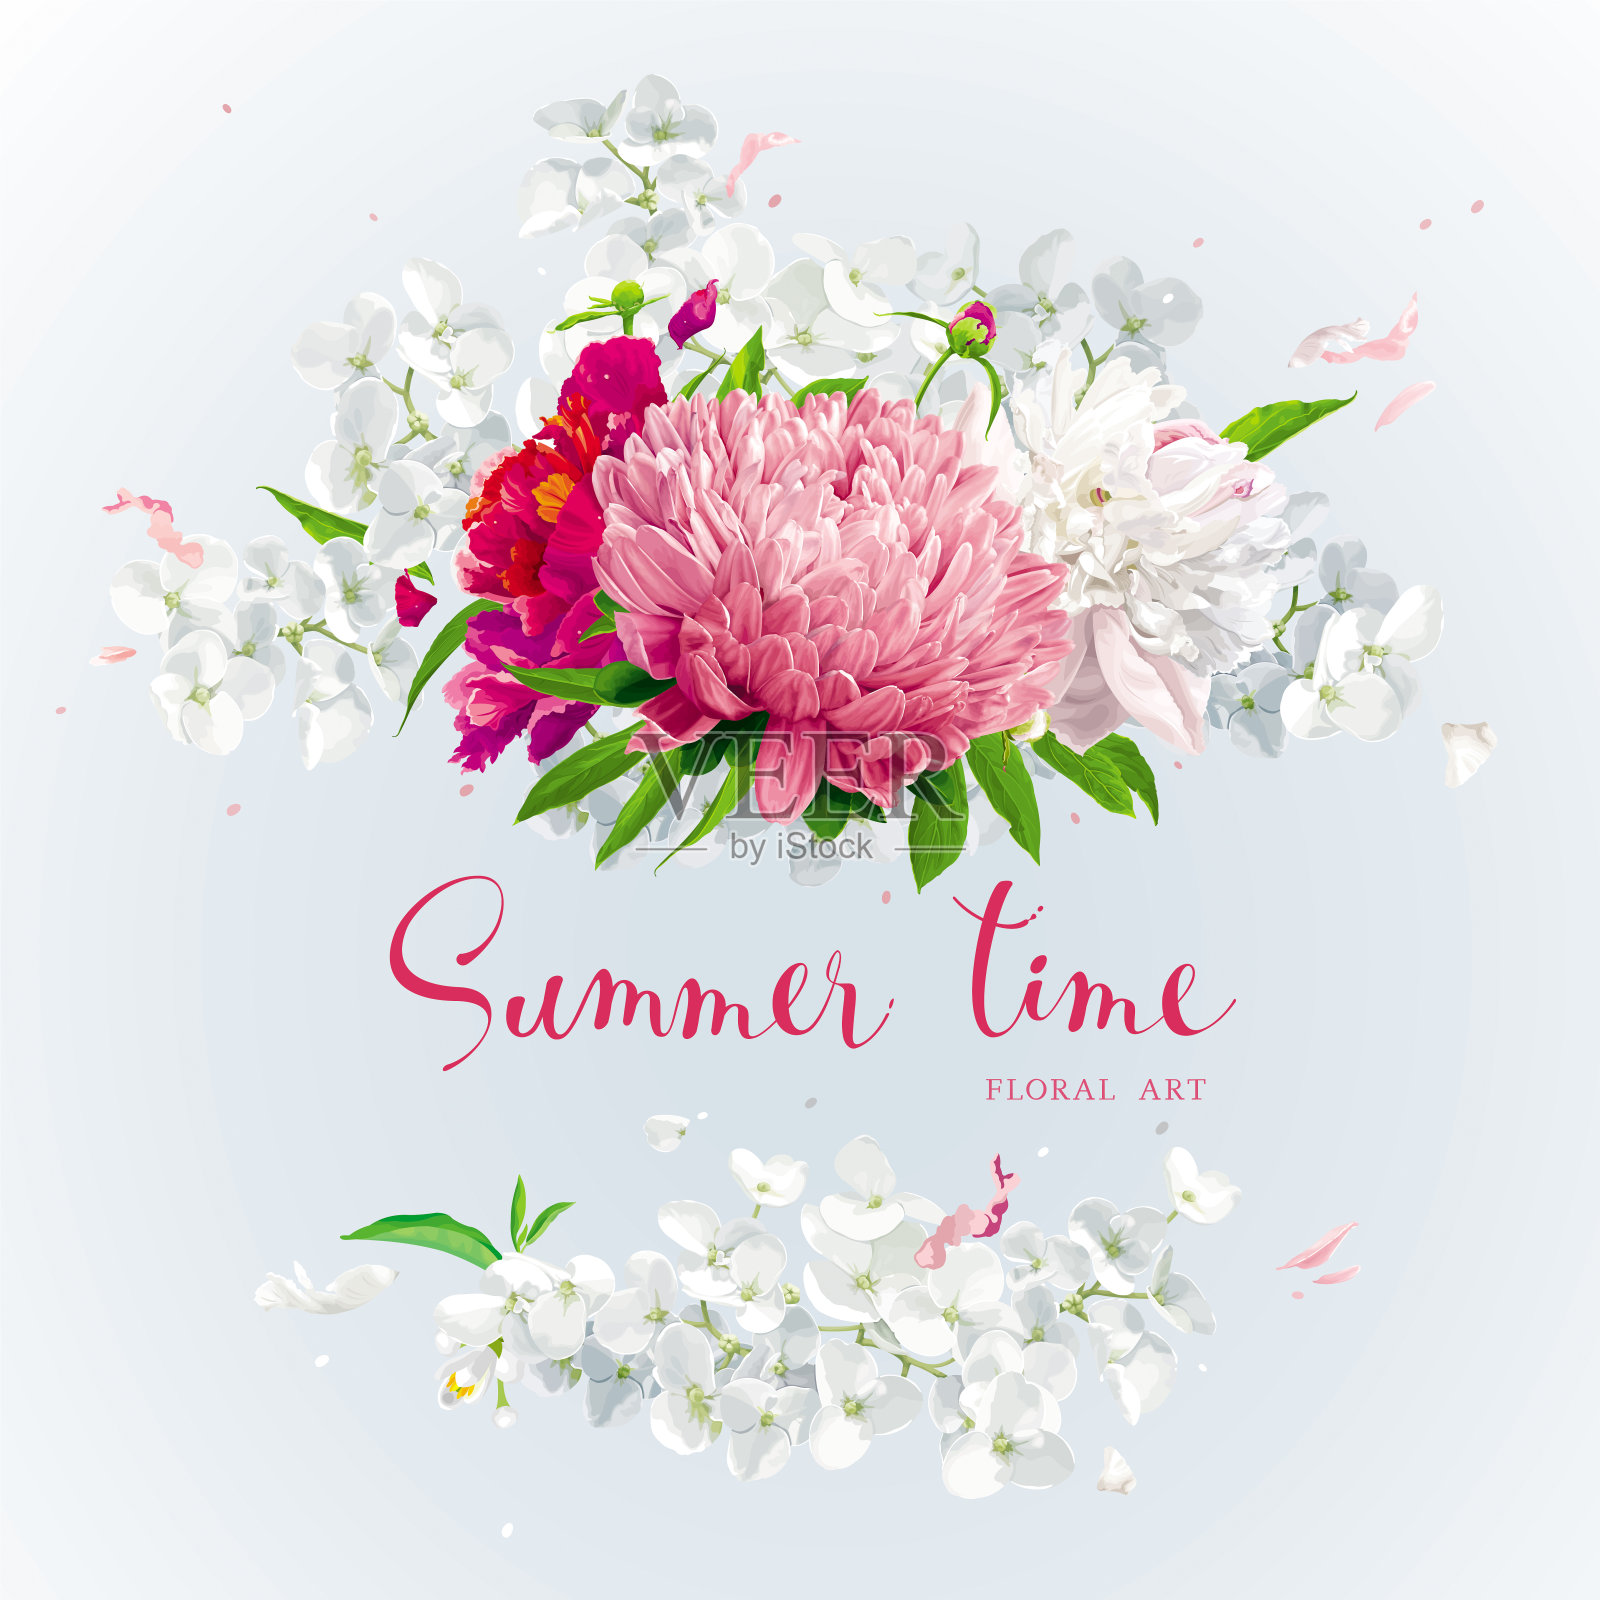 粉红色、红色和白色的夏日鲜花贺卡插画图片素材